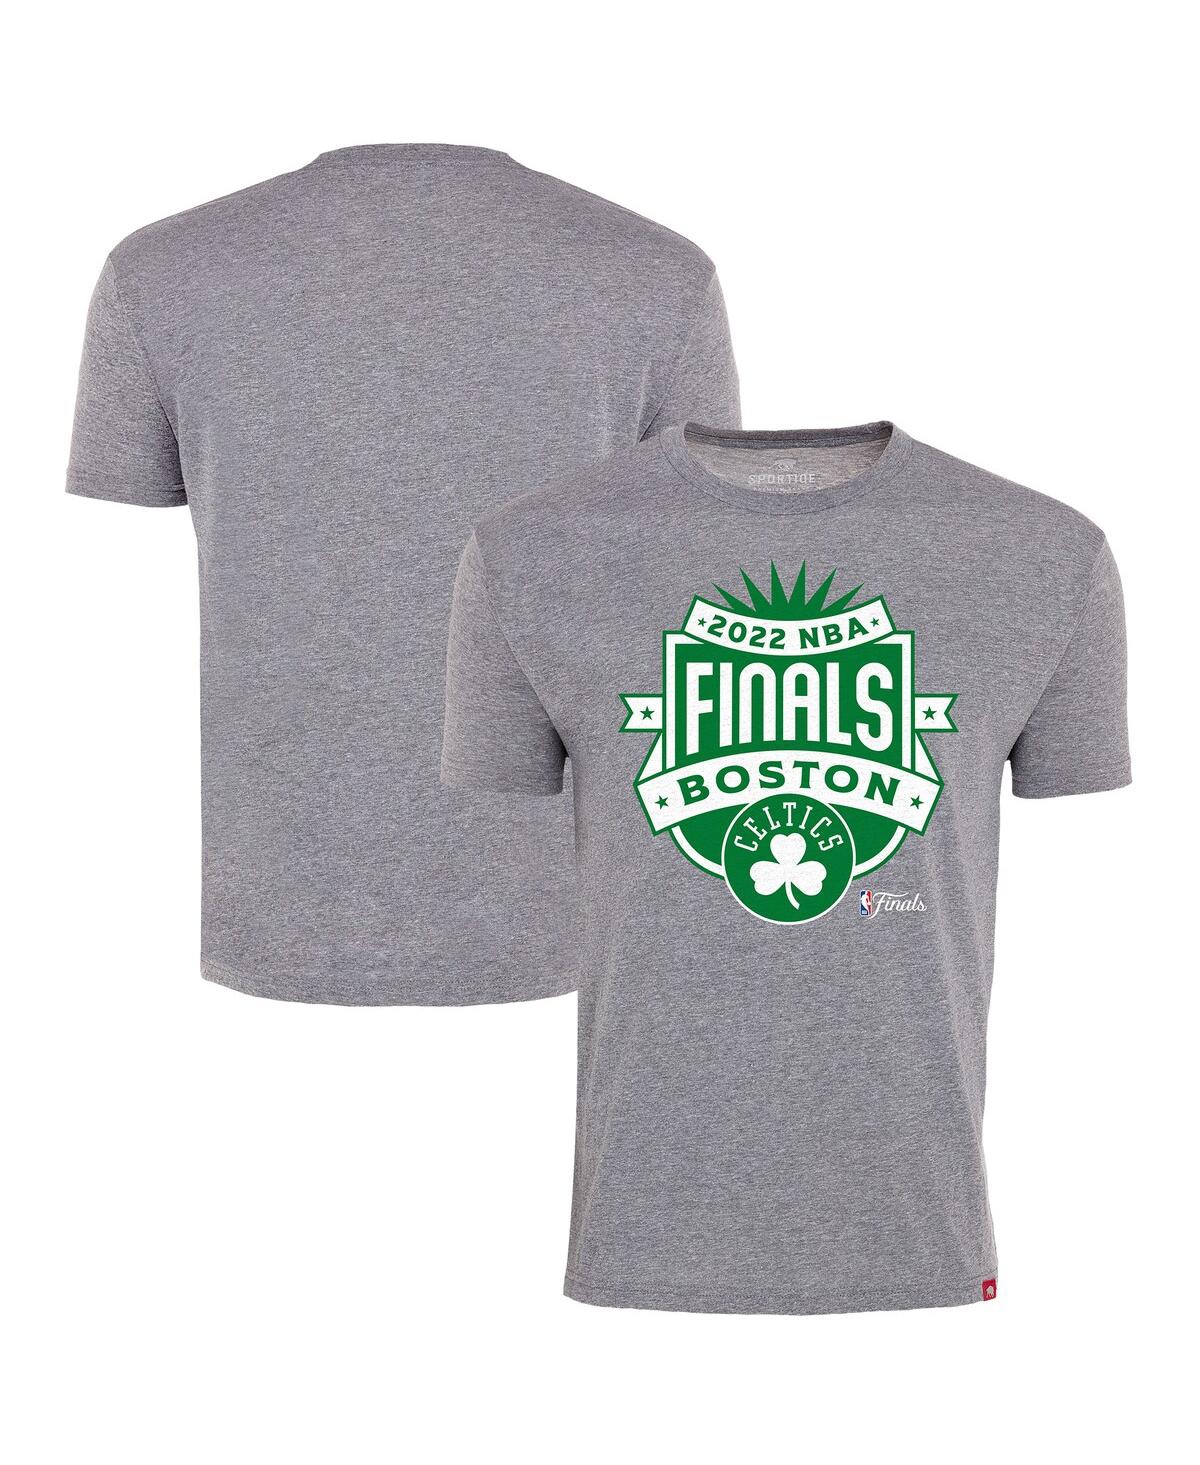 Men's Sportiqe Gray Boston Celtics 2022 Nba Finals Crest Comfy T-shirt - Gray